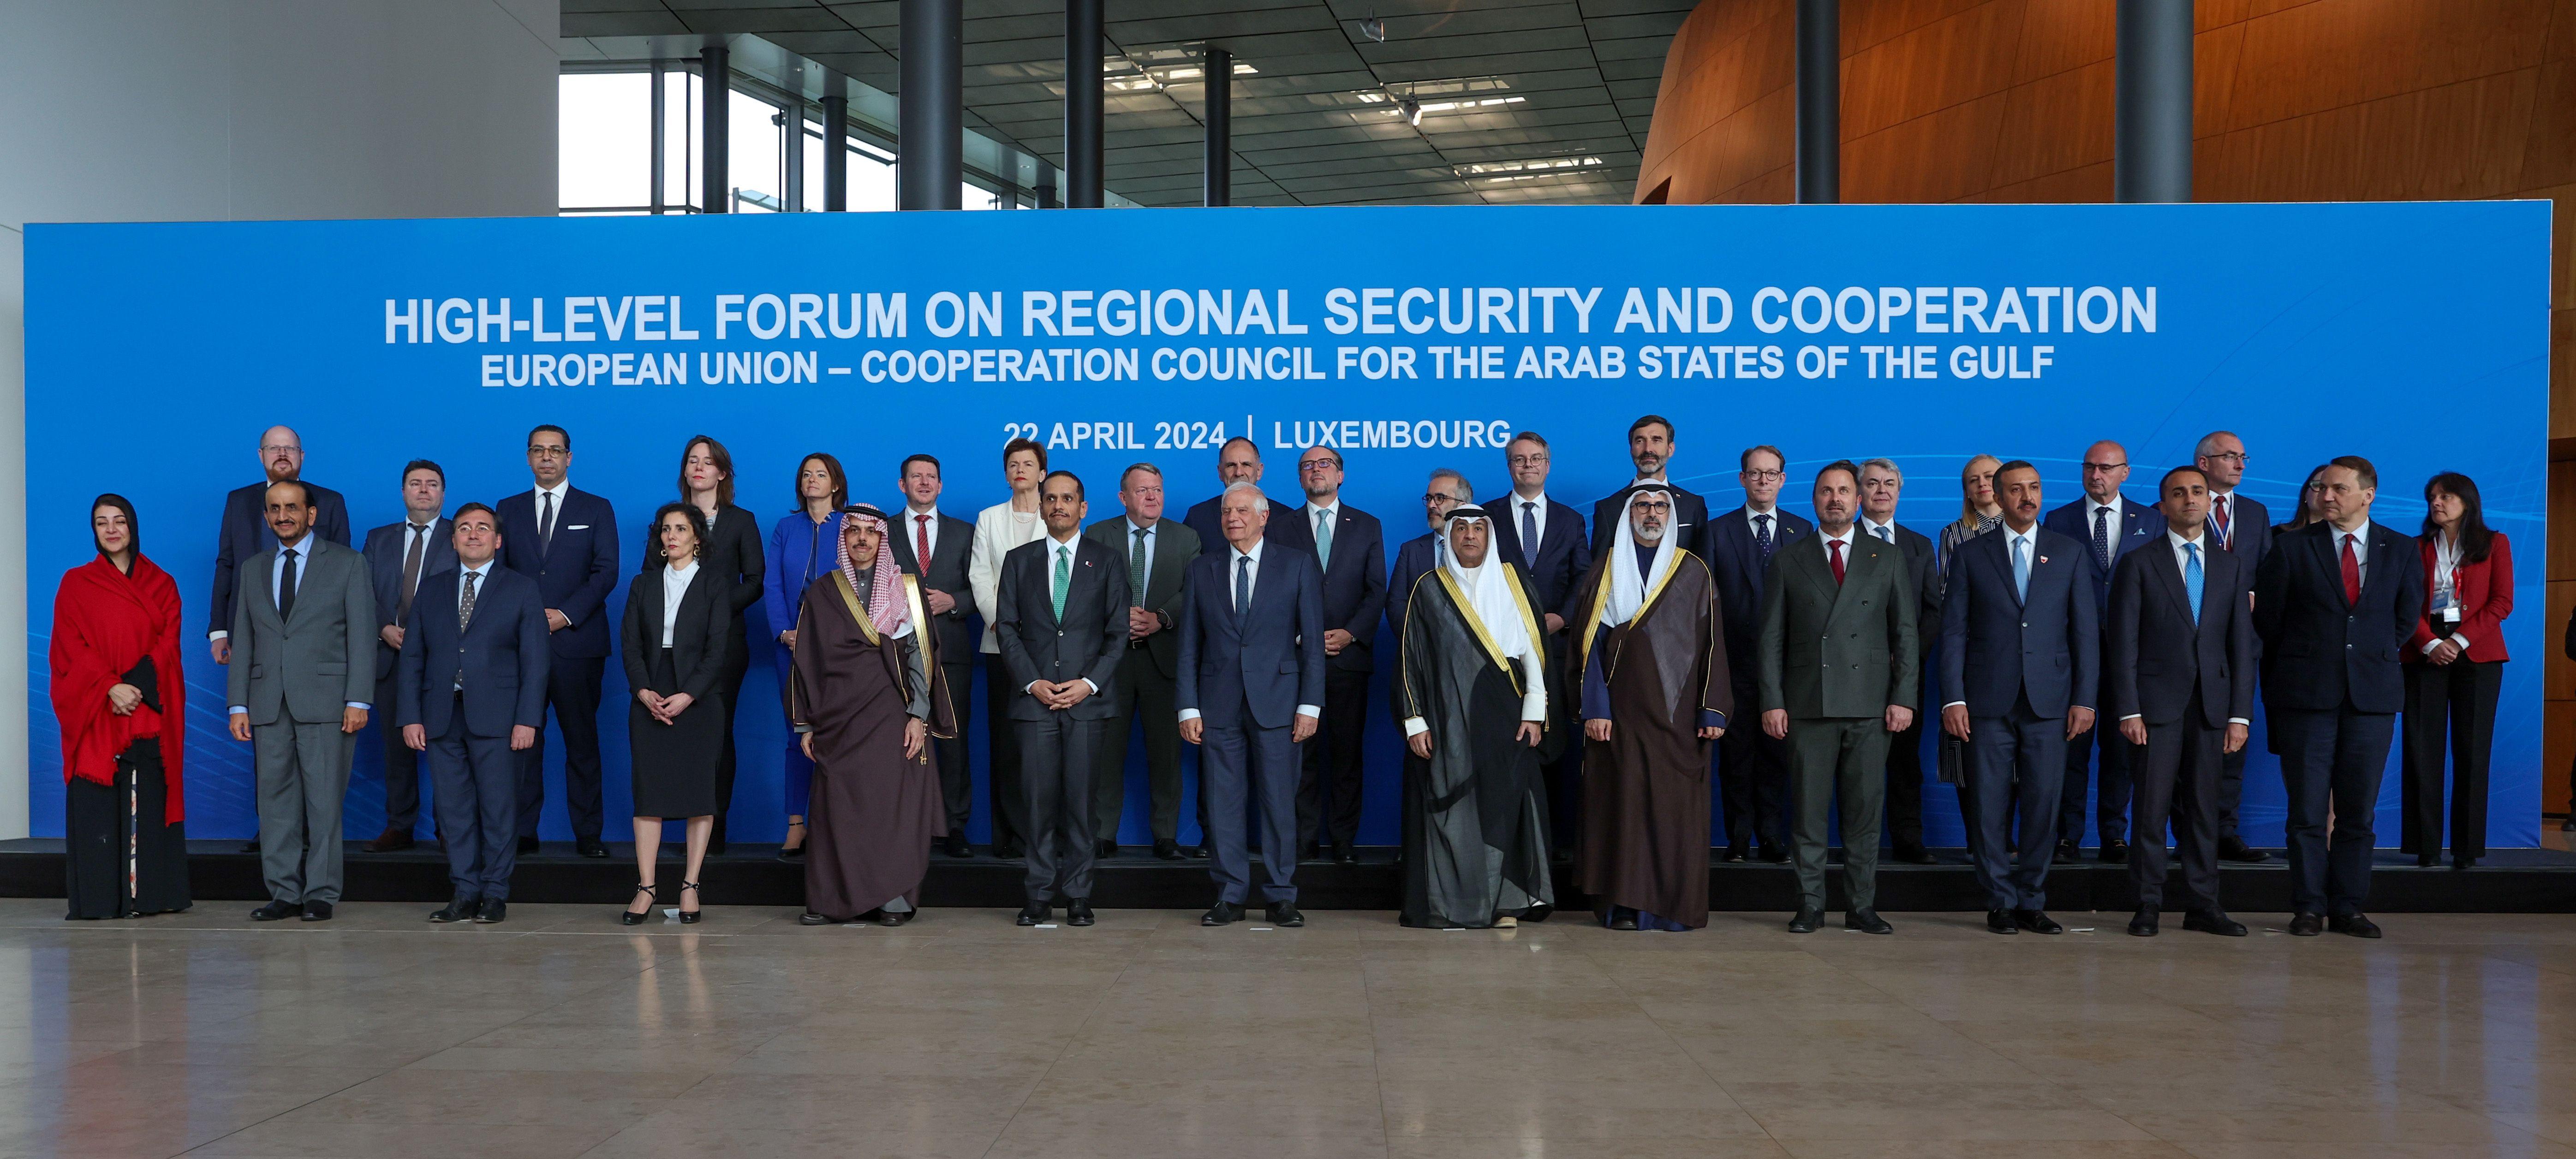 جوزيب بوريل في صورة جماعية مع وزراء خارجية دول مجلس التعاون الخليجي